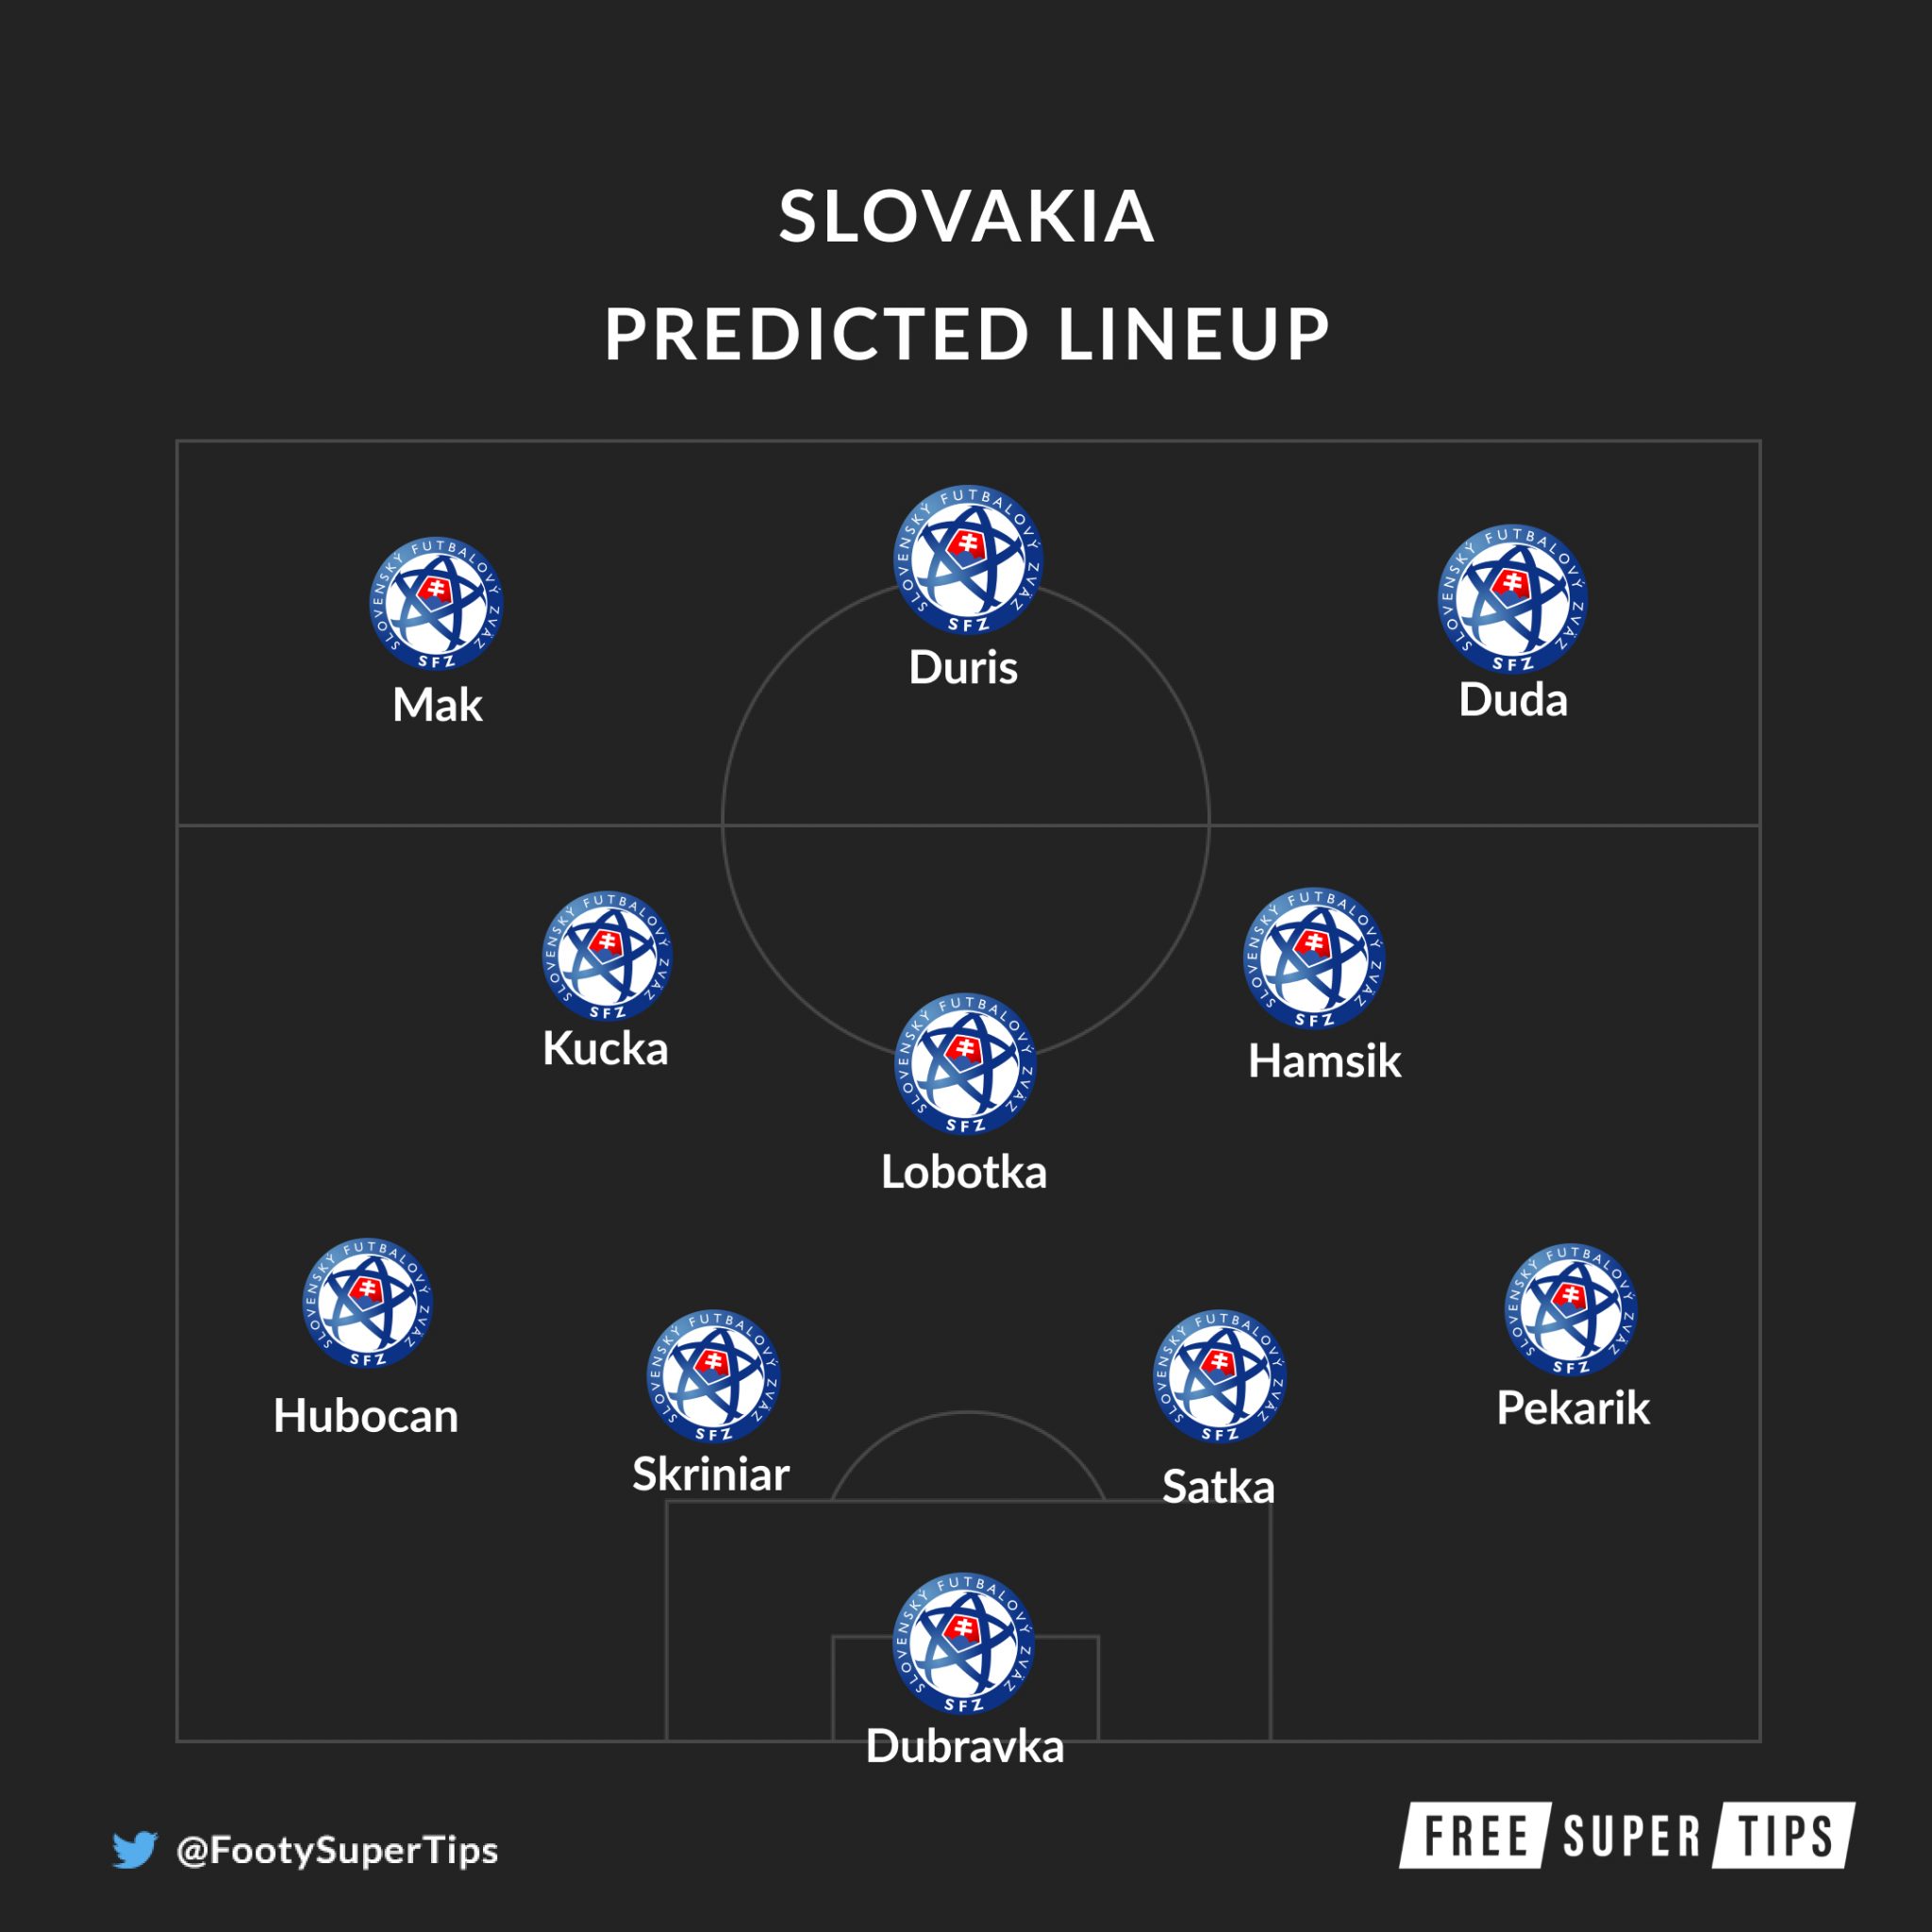 Poland vs Slovakia Predictions & Tips